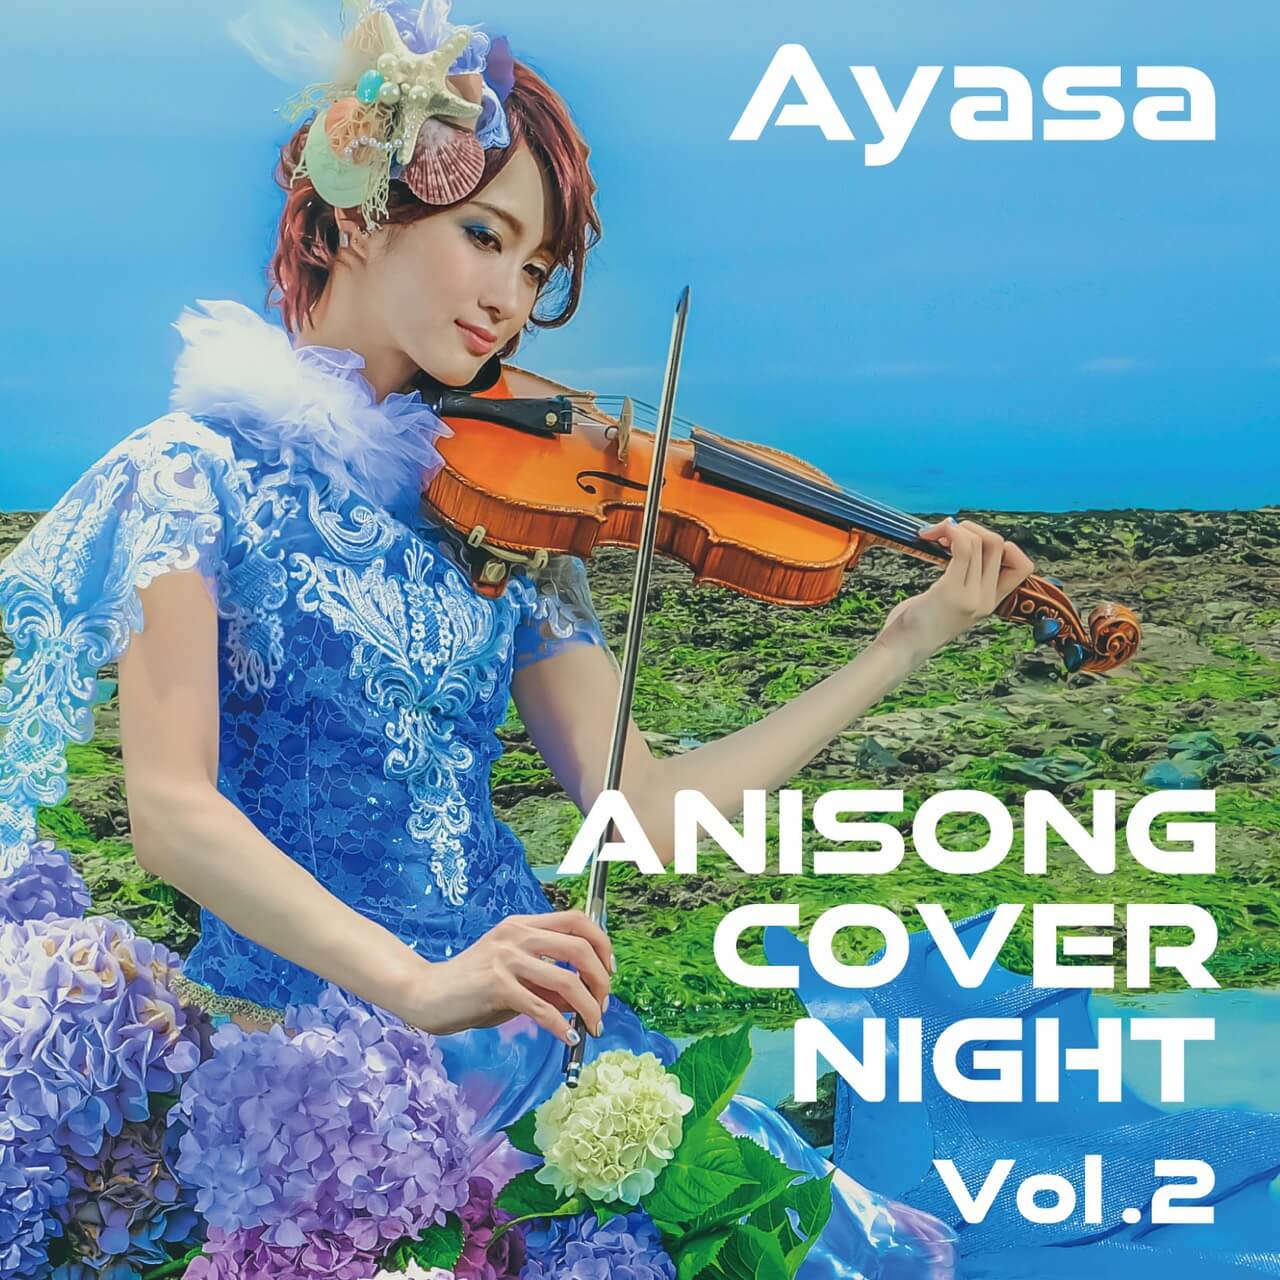 Ayasaがアニソンカバーアルバム Anisong Cover Night Vol 2 を配信 19年10月1日 エキサイトニュース